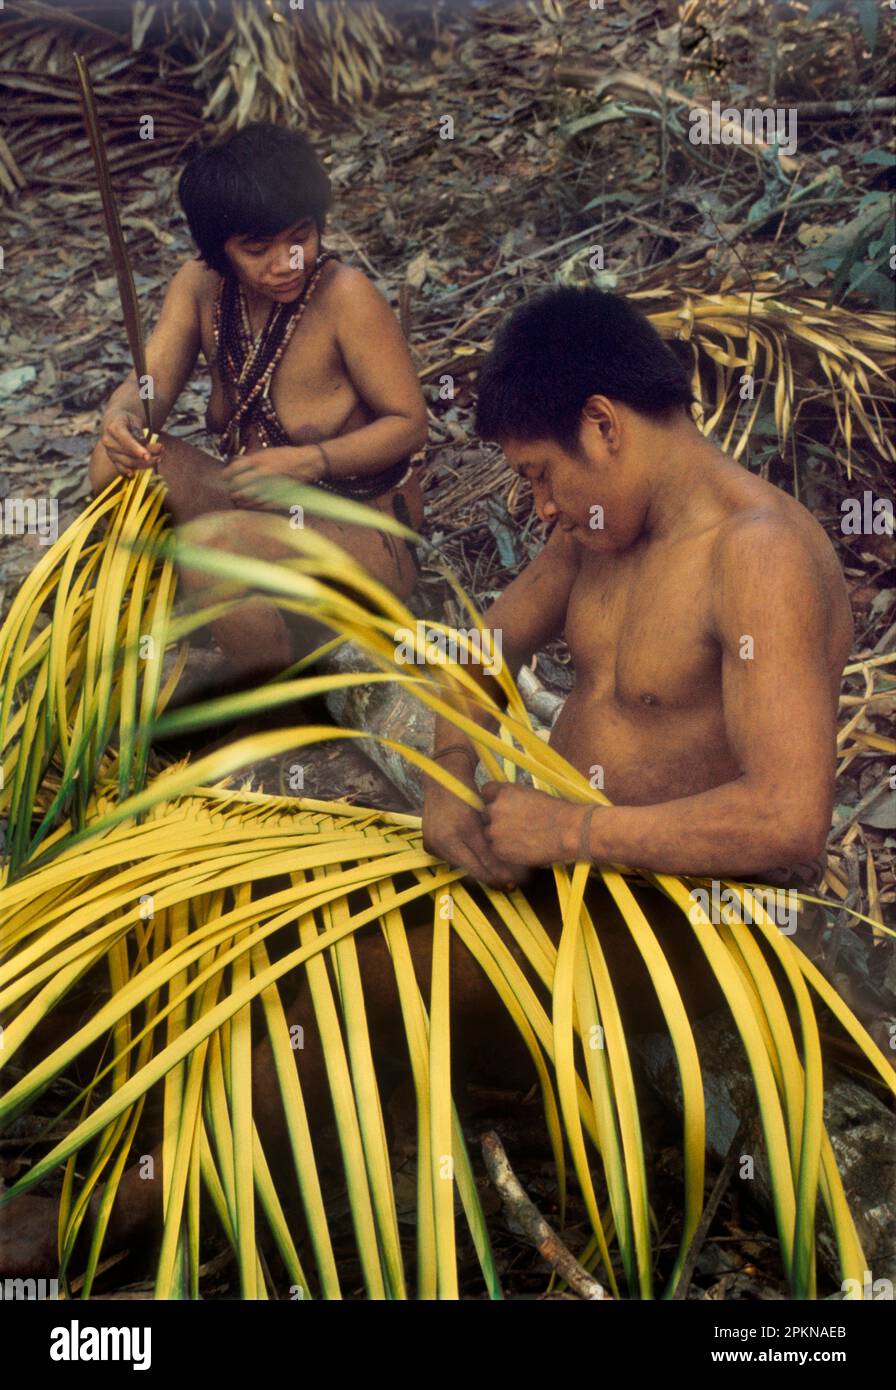 Verwendung von Waldprodukten durch Inder der Regenwälder Venezuelas: Ehemann und Ehefrau der ethnischen Gruppe Hoti, die Körbe aus unreifen Palmblättern weben. Stockfoto